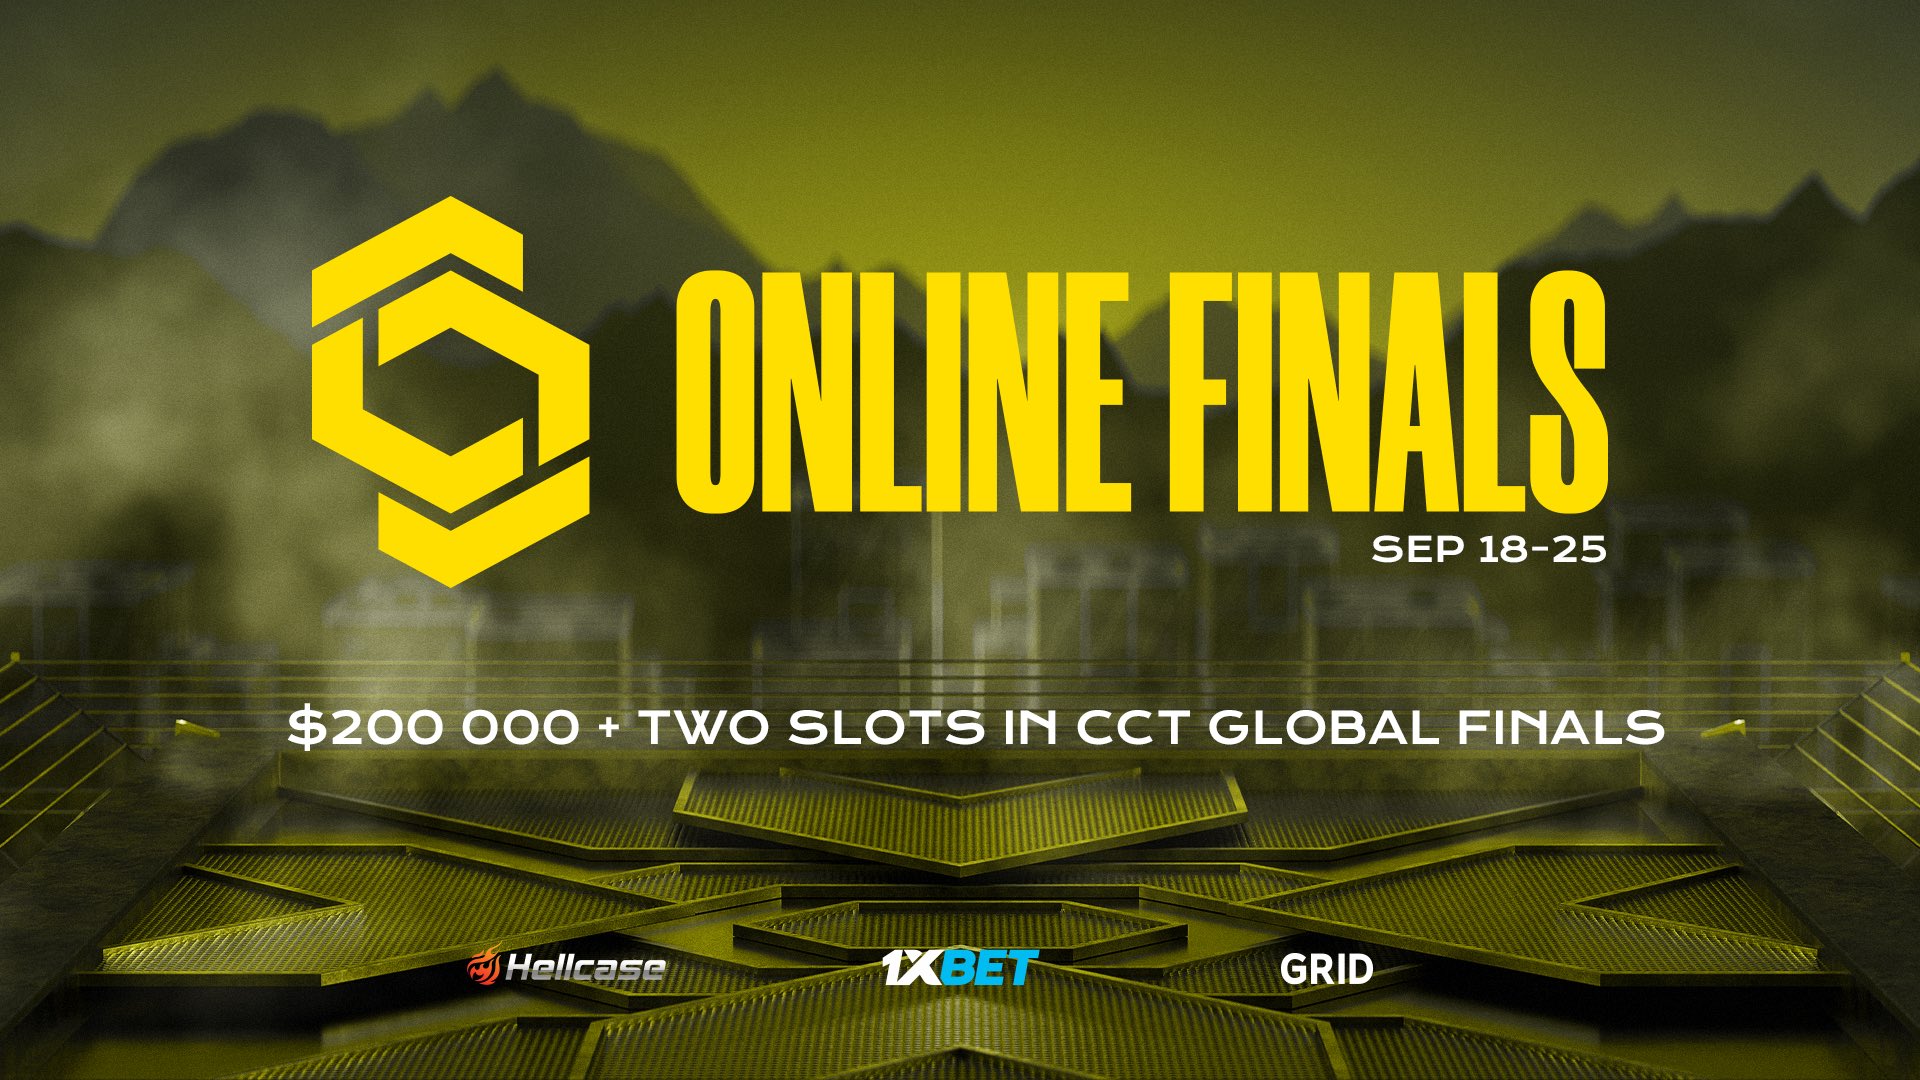 SINNERS si zahrají CCT Online Finals 3. Kdo bude jejich prvním soupeřem?